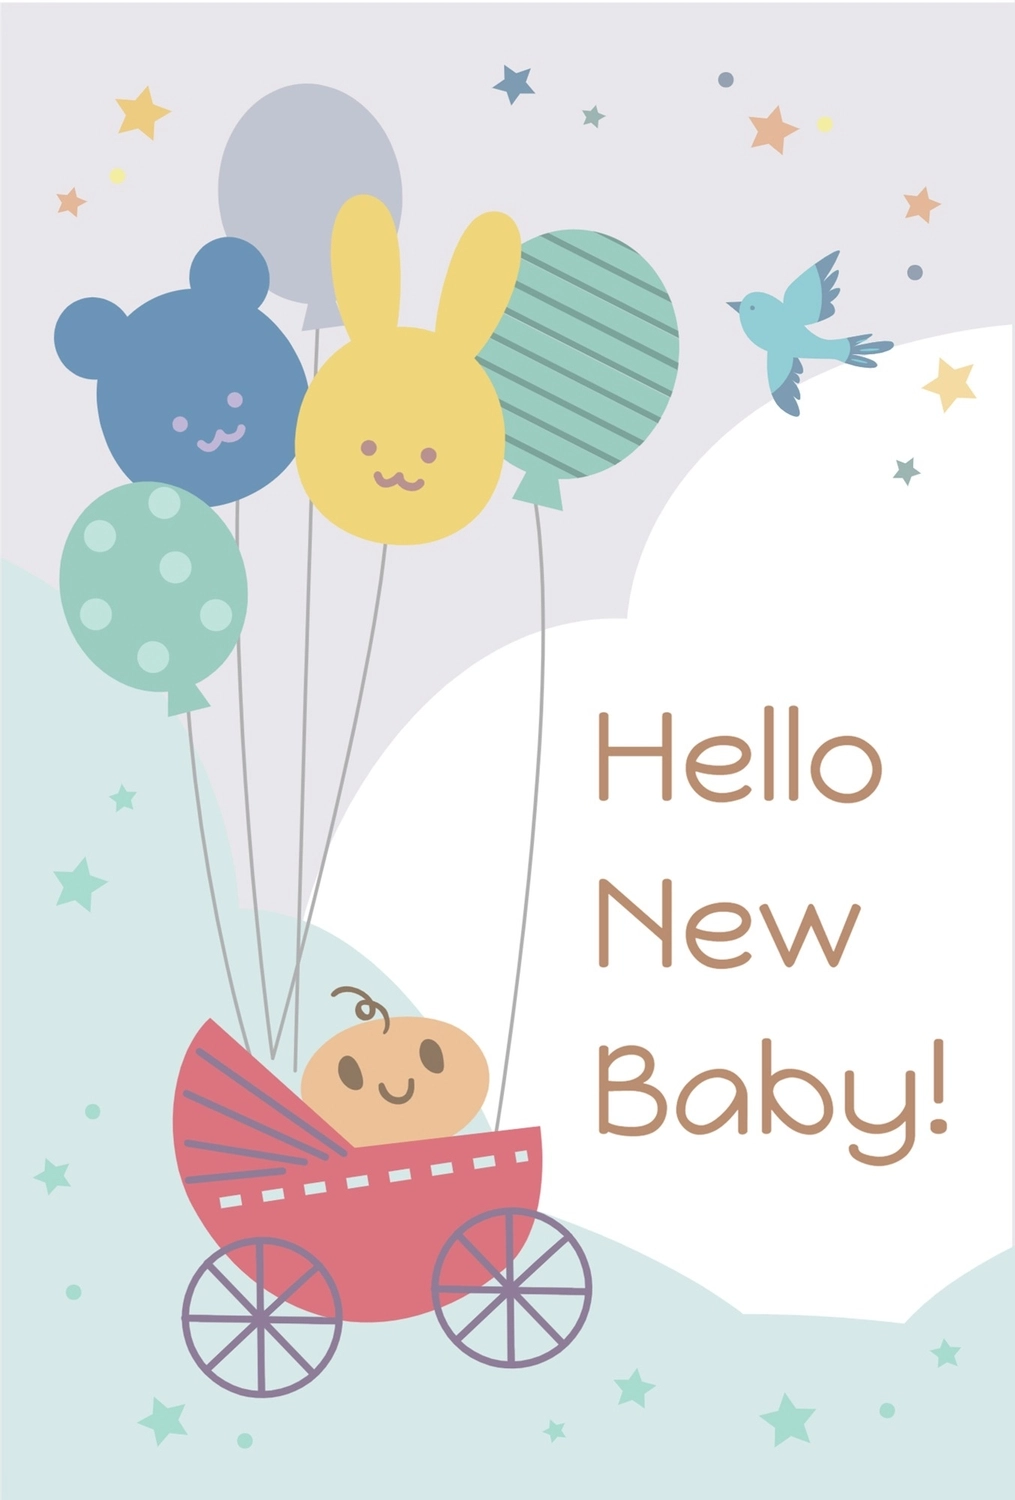 赤ちゃんイラストの出産報告の無料グリーティングカードテンプレート 7061 デザインac